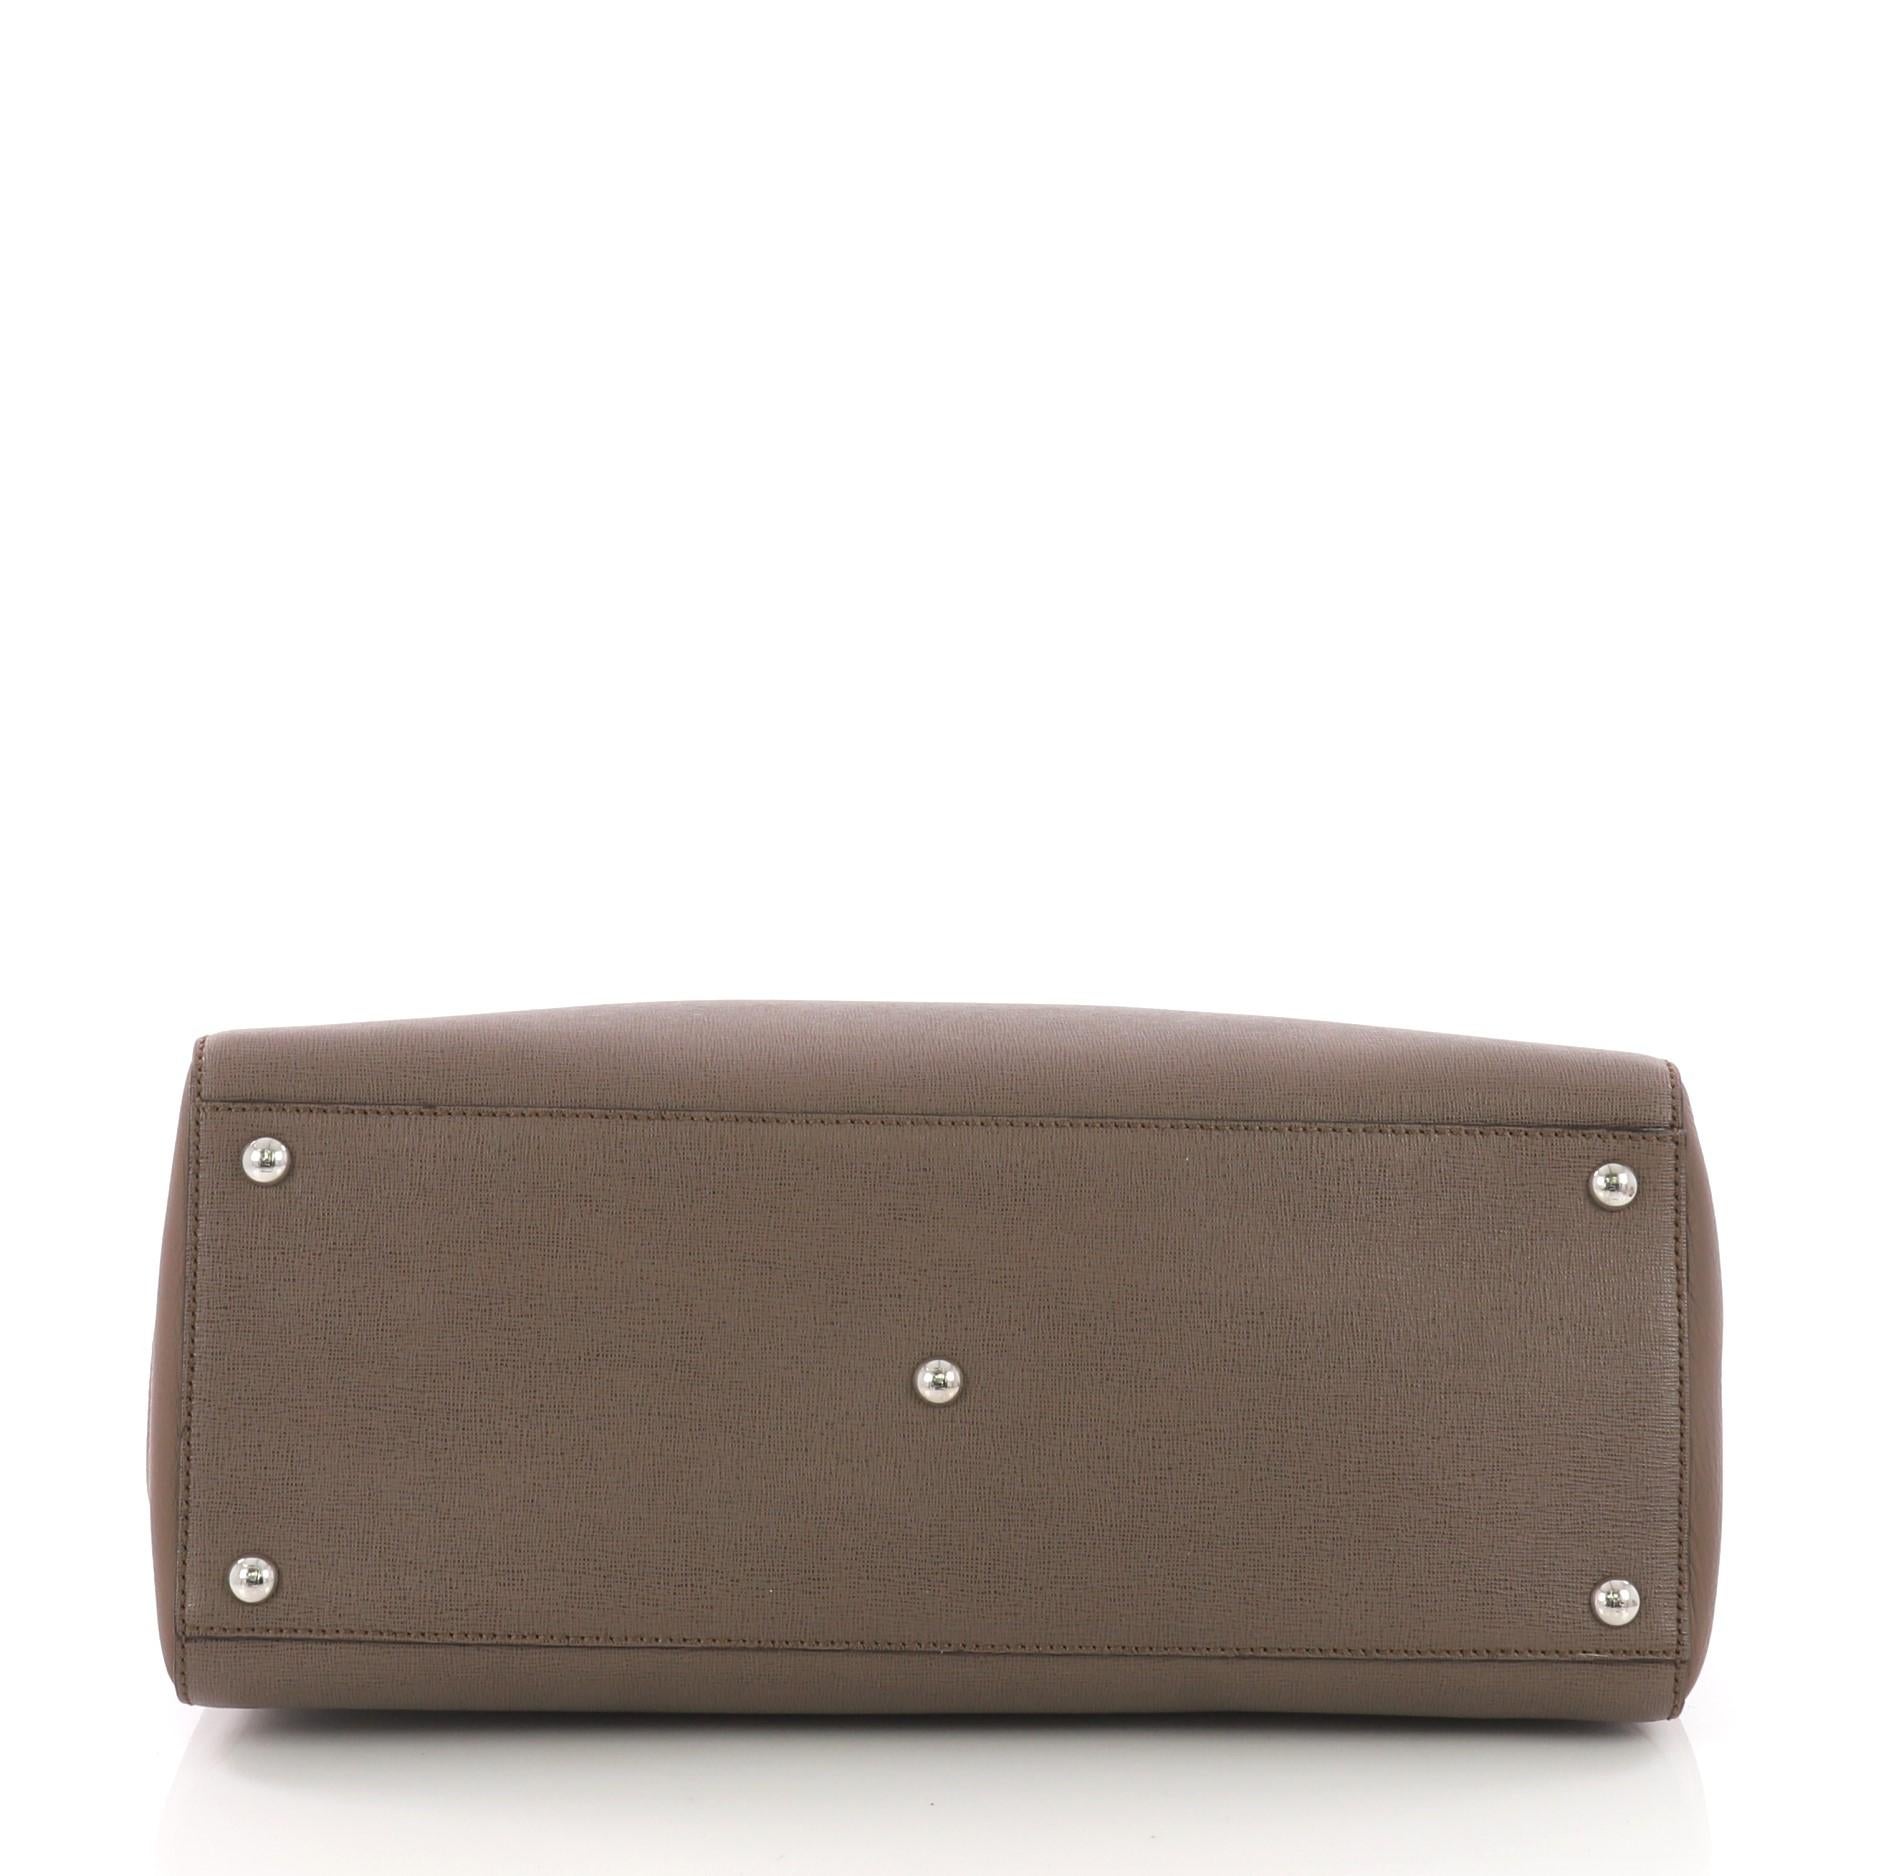 Women's or Men's Fendi 2Jours Handbag Leather Medium,